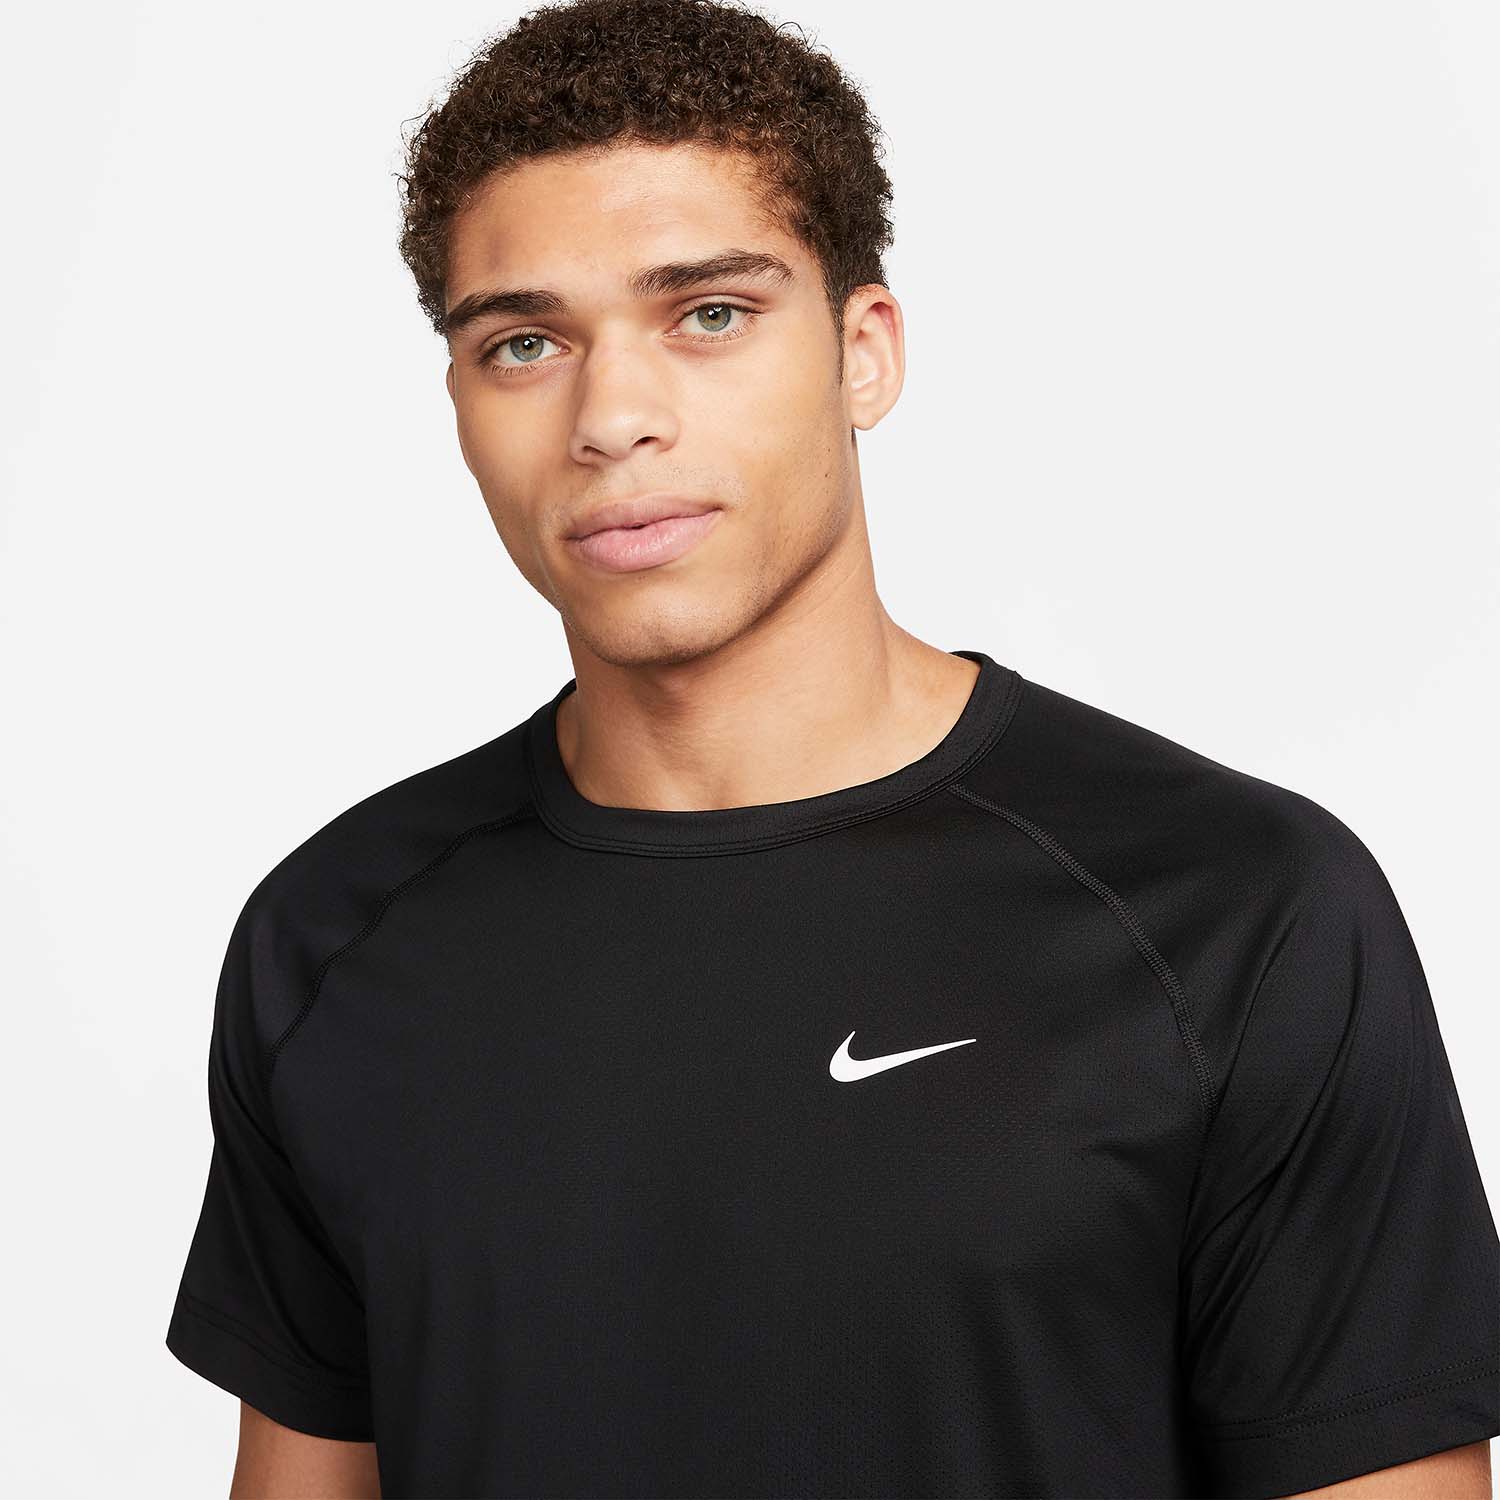 Nike Dri-FIT Ready T-Shirt - Black/Cool Grey/White